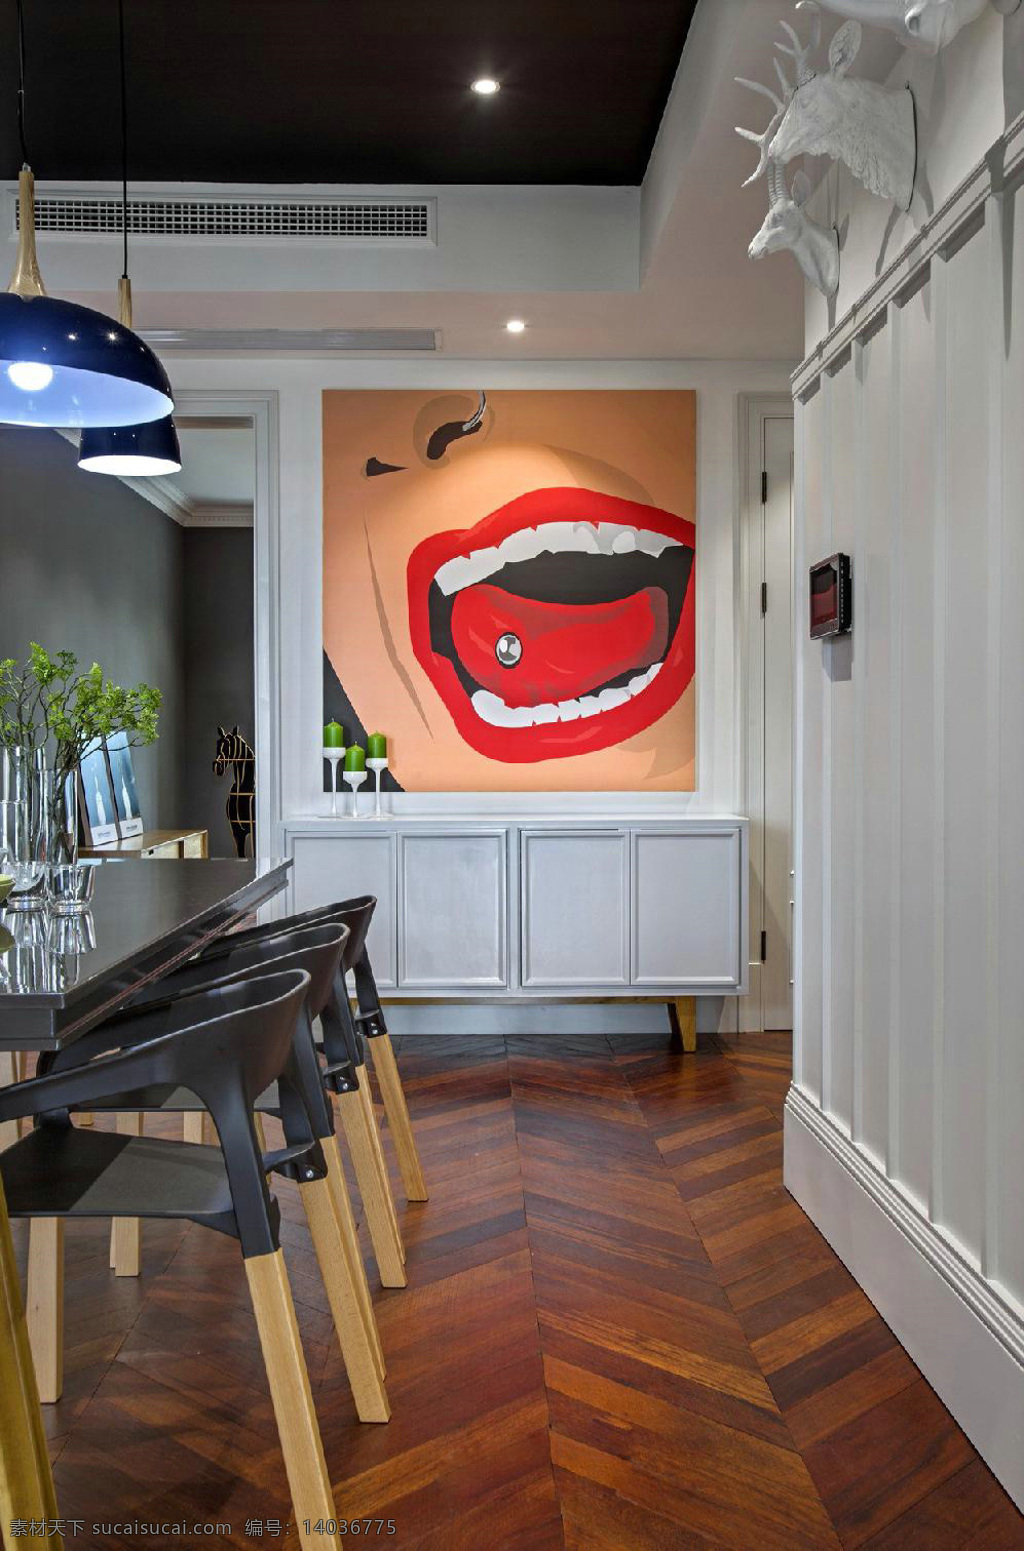 现代 风格 室内 餐厅 壁画 装修 效果图 现代风格 简约座椅 木地板 创意吊灯